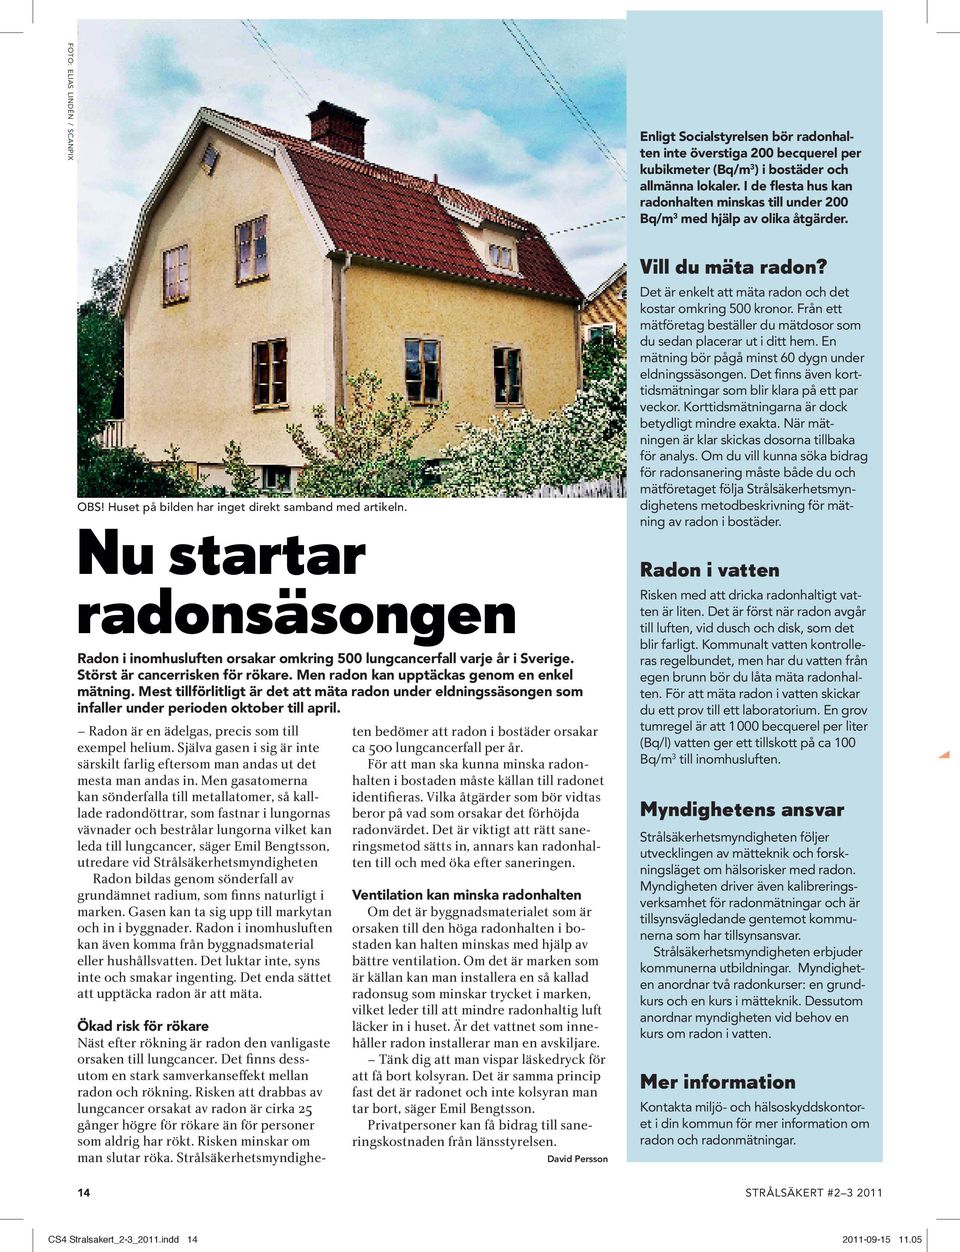 Nu startar radonsäsongen Radon i inomhusluften orsakar omkring 500 lungcancerfall varje år i Sverige. Störst är cancerrisken för rökare. Men radon kan upptäckas genom en enkel mätning.